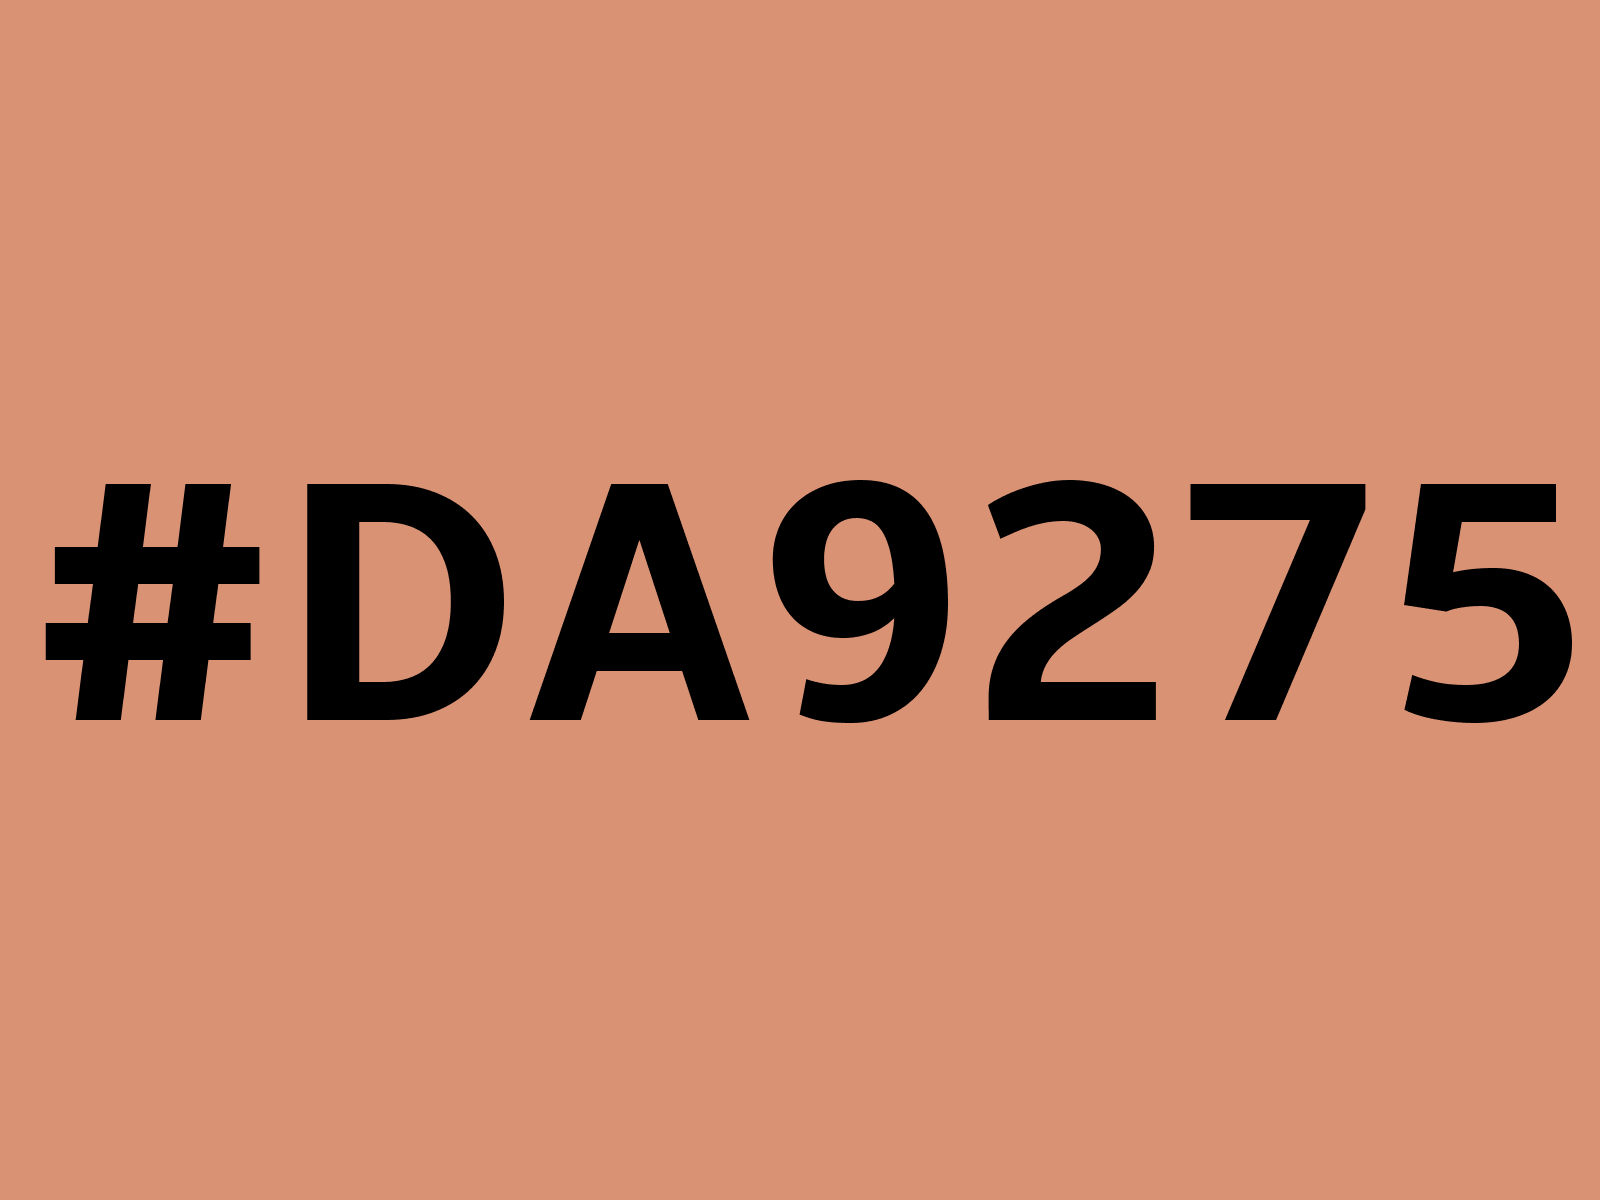 da9275